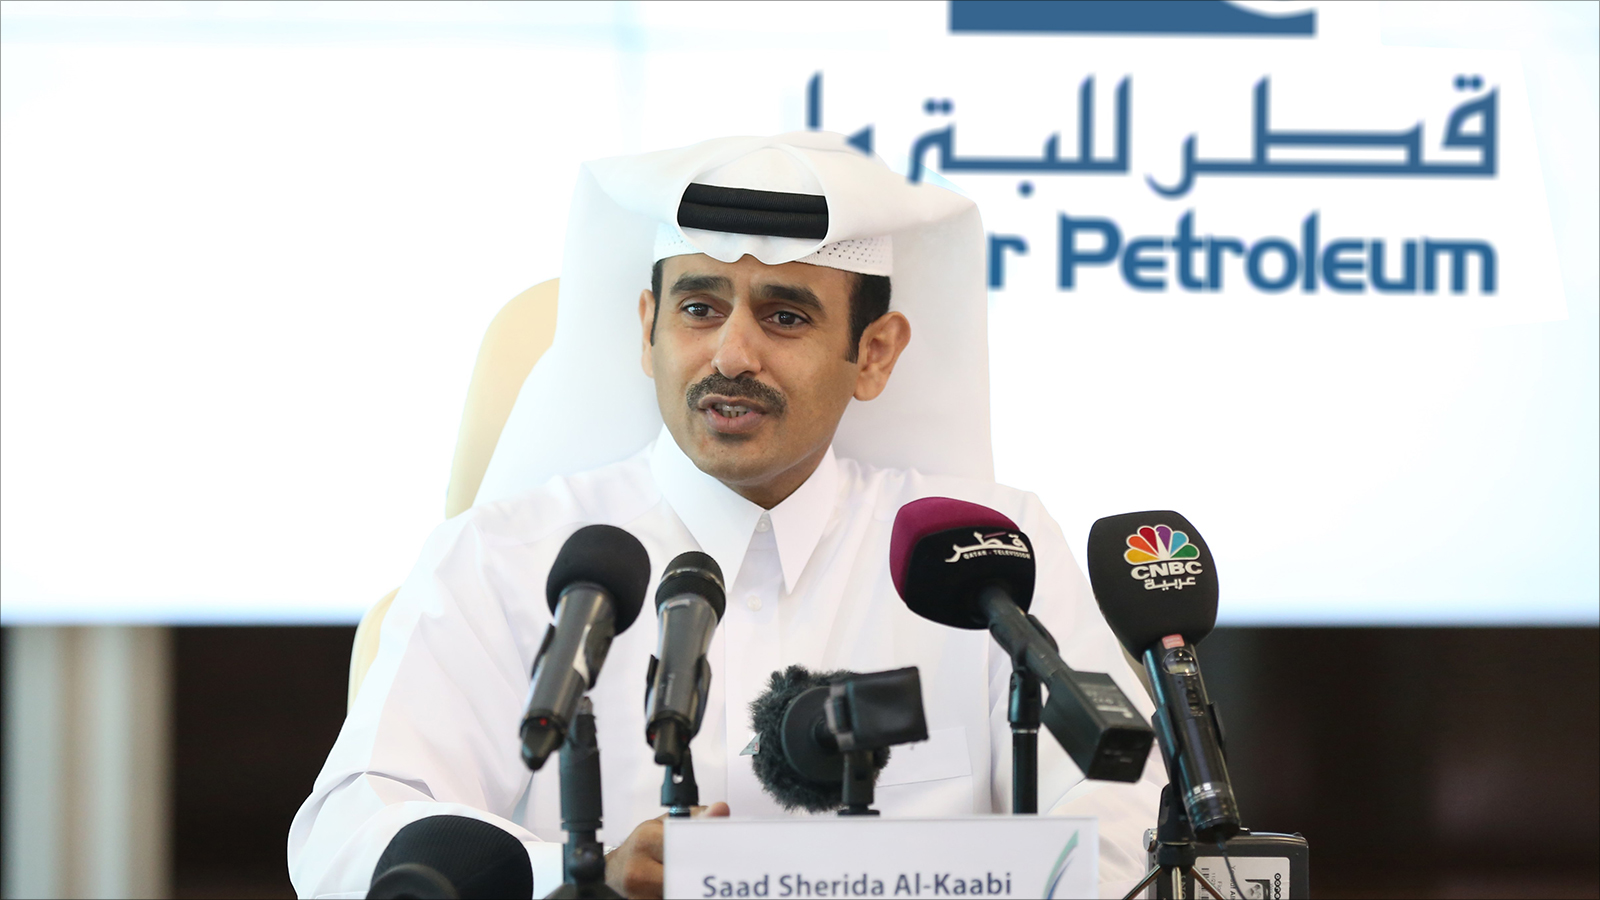 تخطط قطر التي تهيمن على 30% من سوق الغاز الطبيعي المسال عالميا، لزيادة حصتها بنسبة تصل إلى 40% خلال الأعوام القادمة